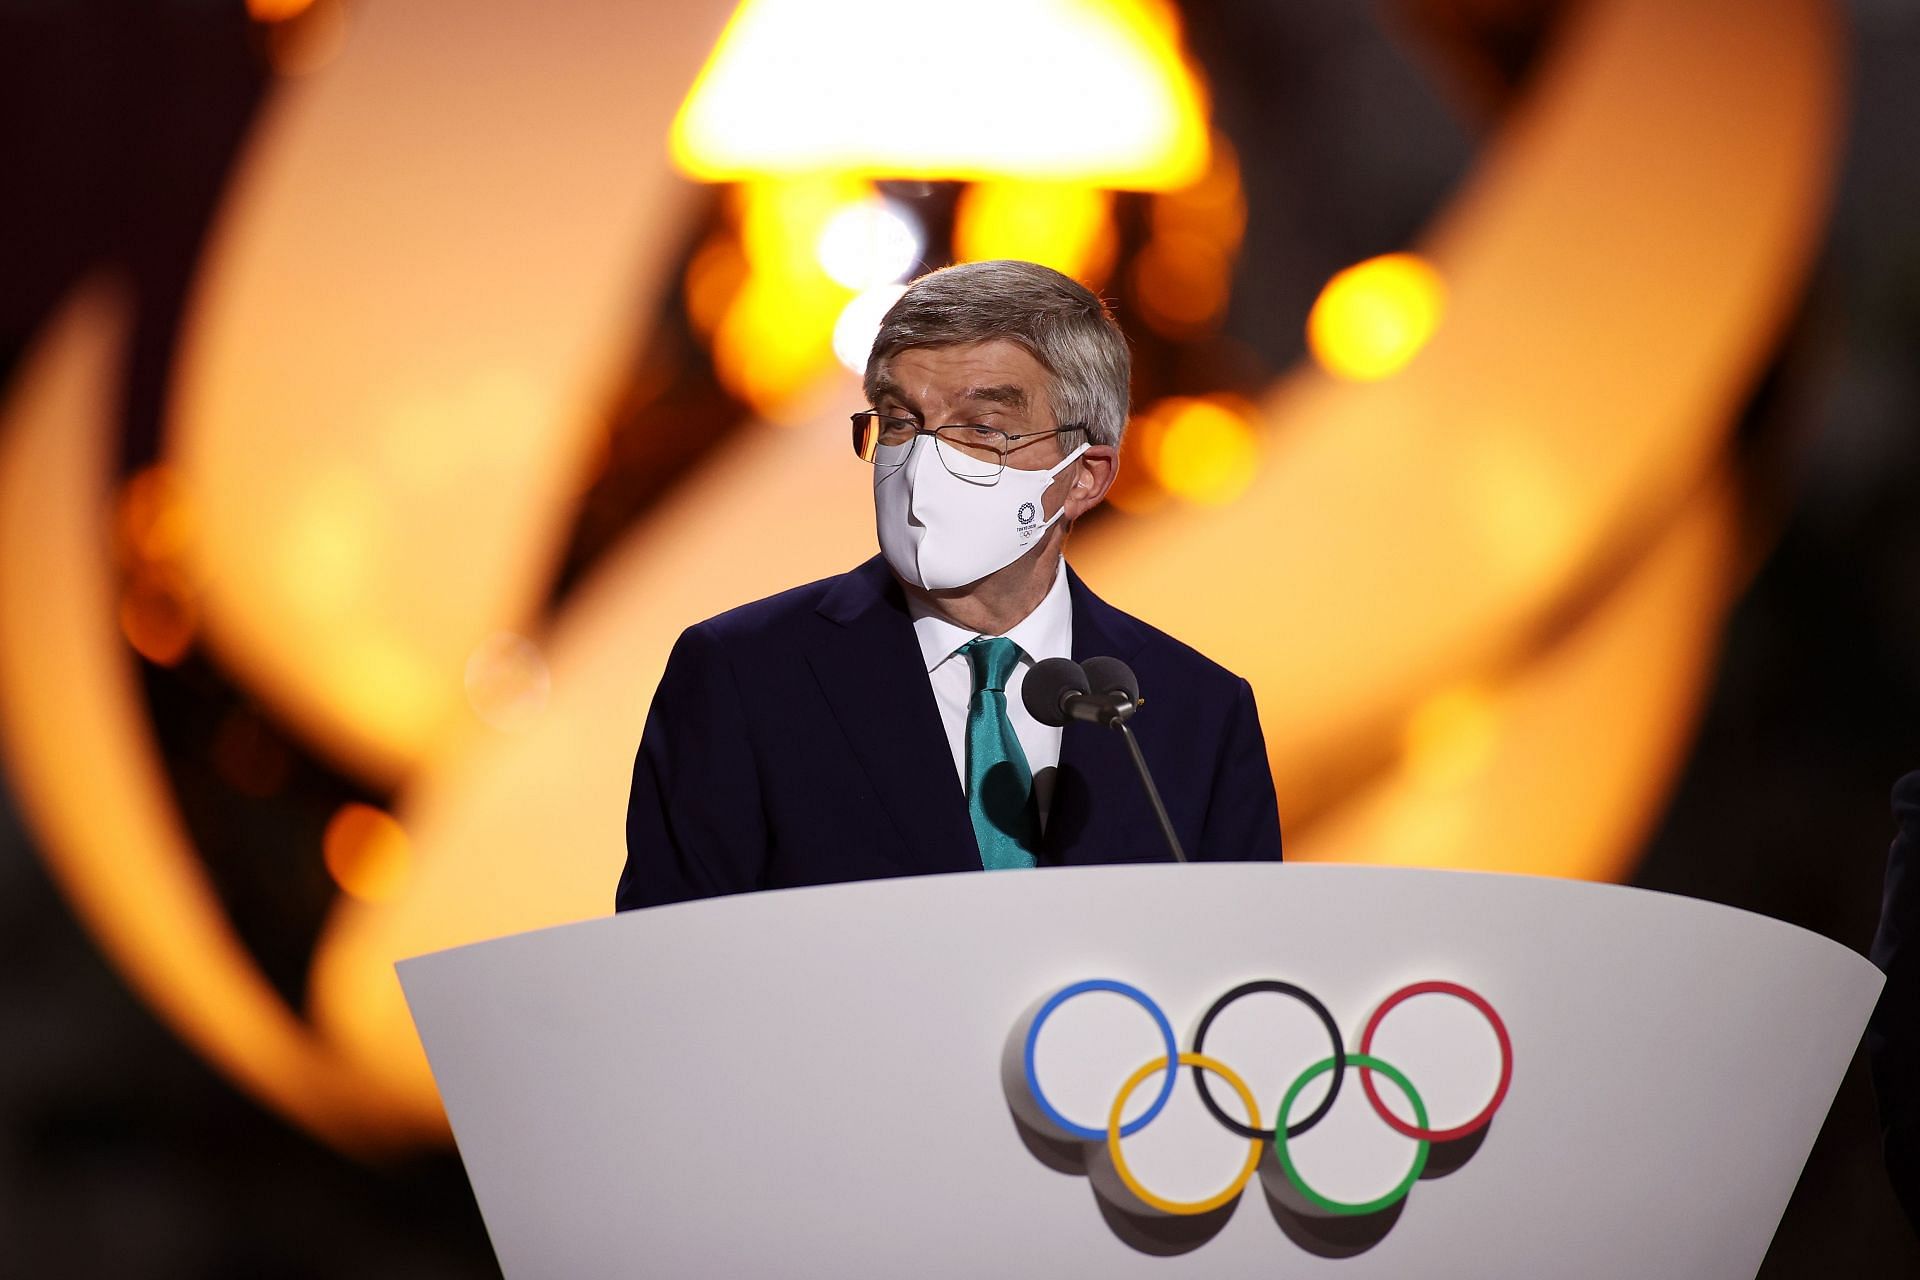 Closing Ceremony - Olympics: Day 16